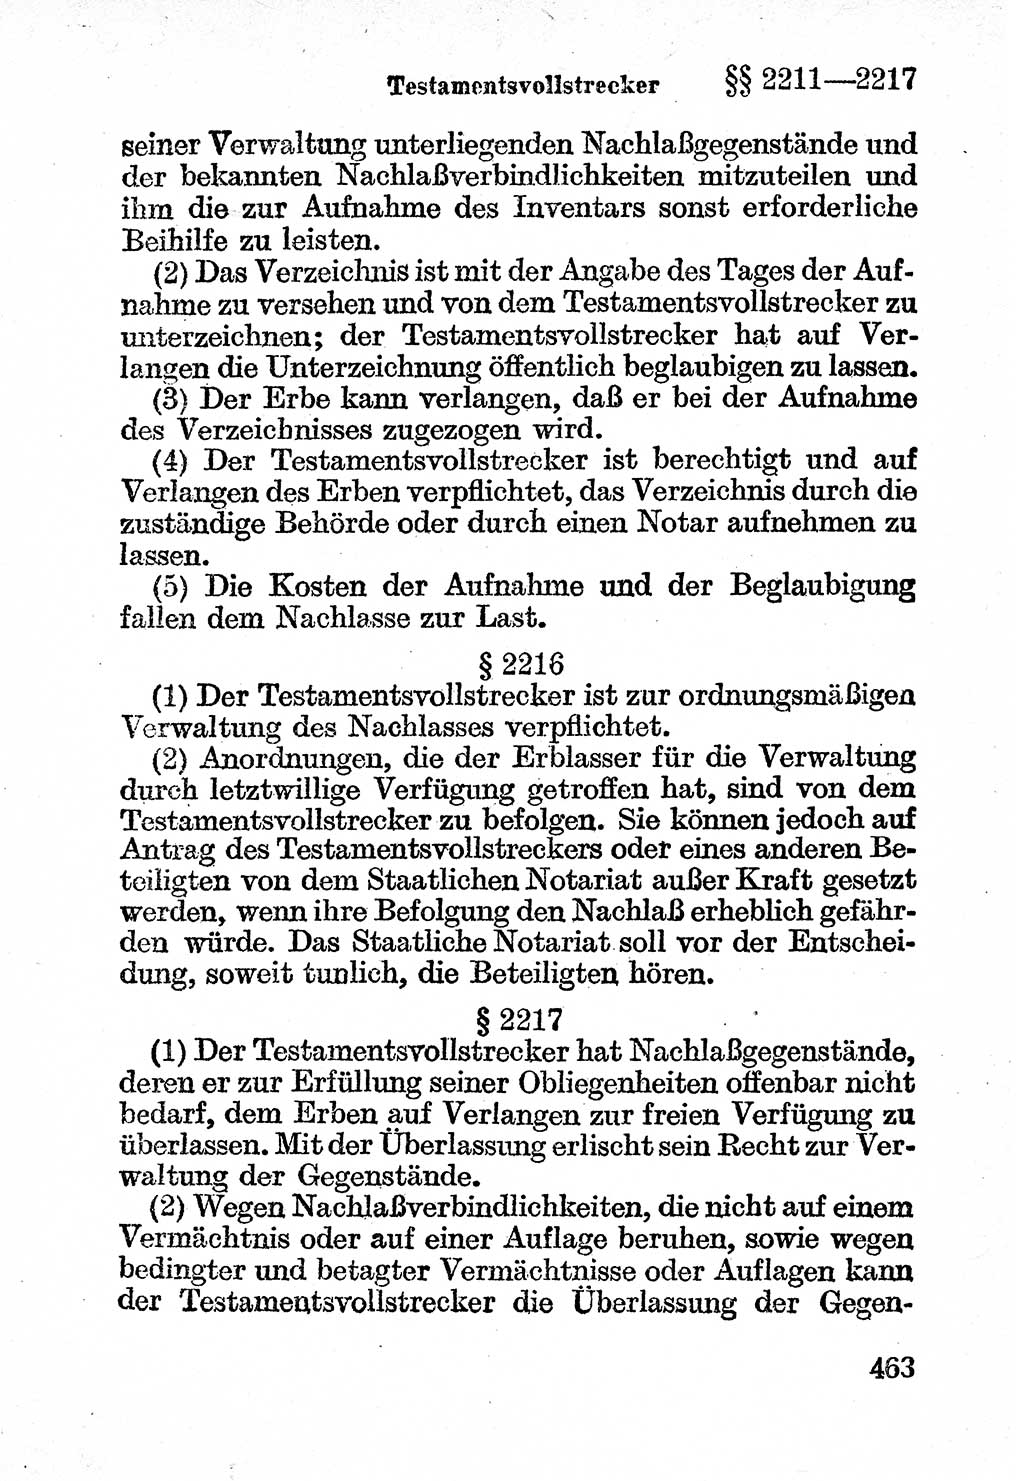 Bürgerliches Gesetzbuch (BGB) nebst wichtigen Nebengesetzen [Deutsche Demokratische Republik (DDR)] 1956, Seite 463 (BGB Nebenges. DDR 1956, S. 463)